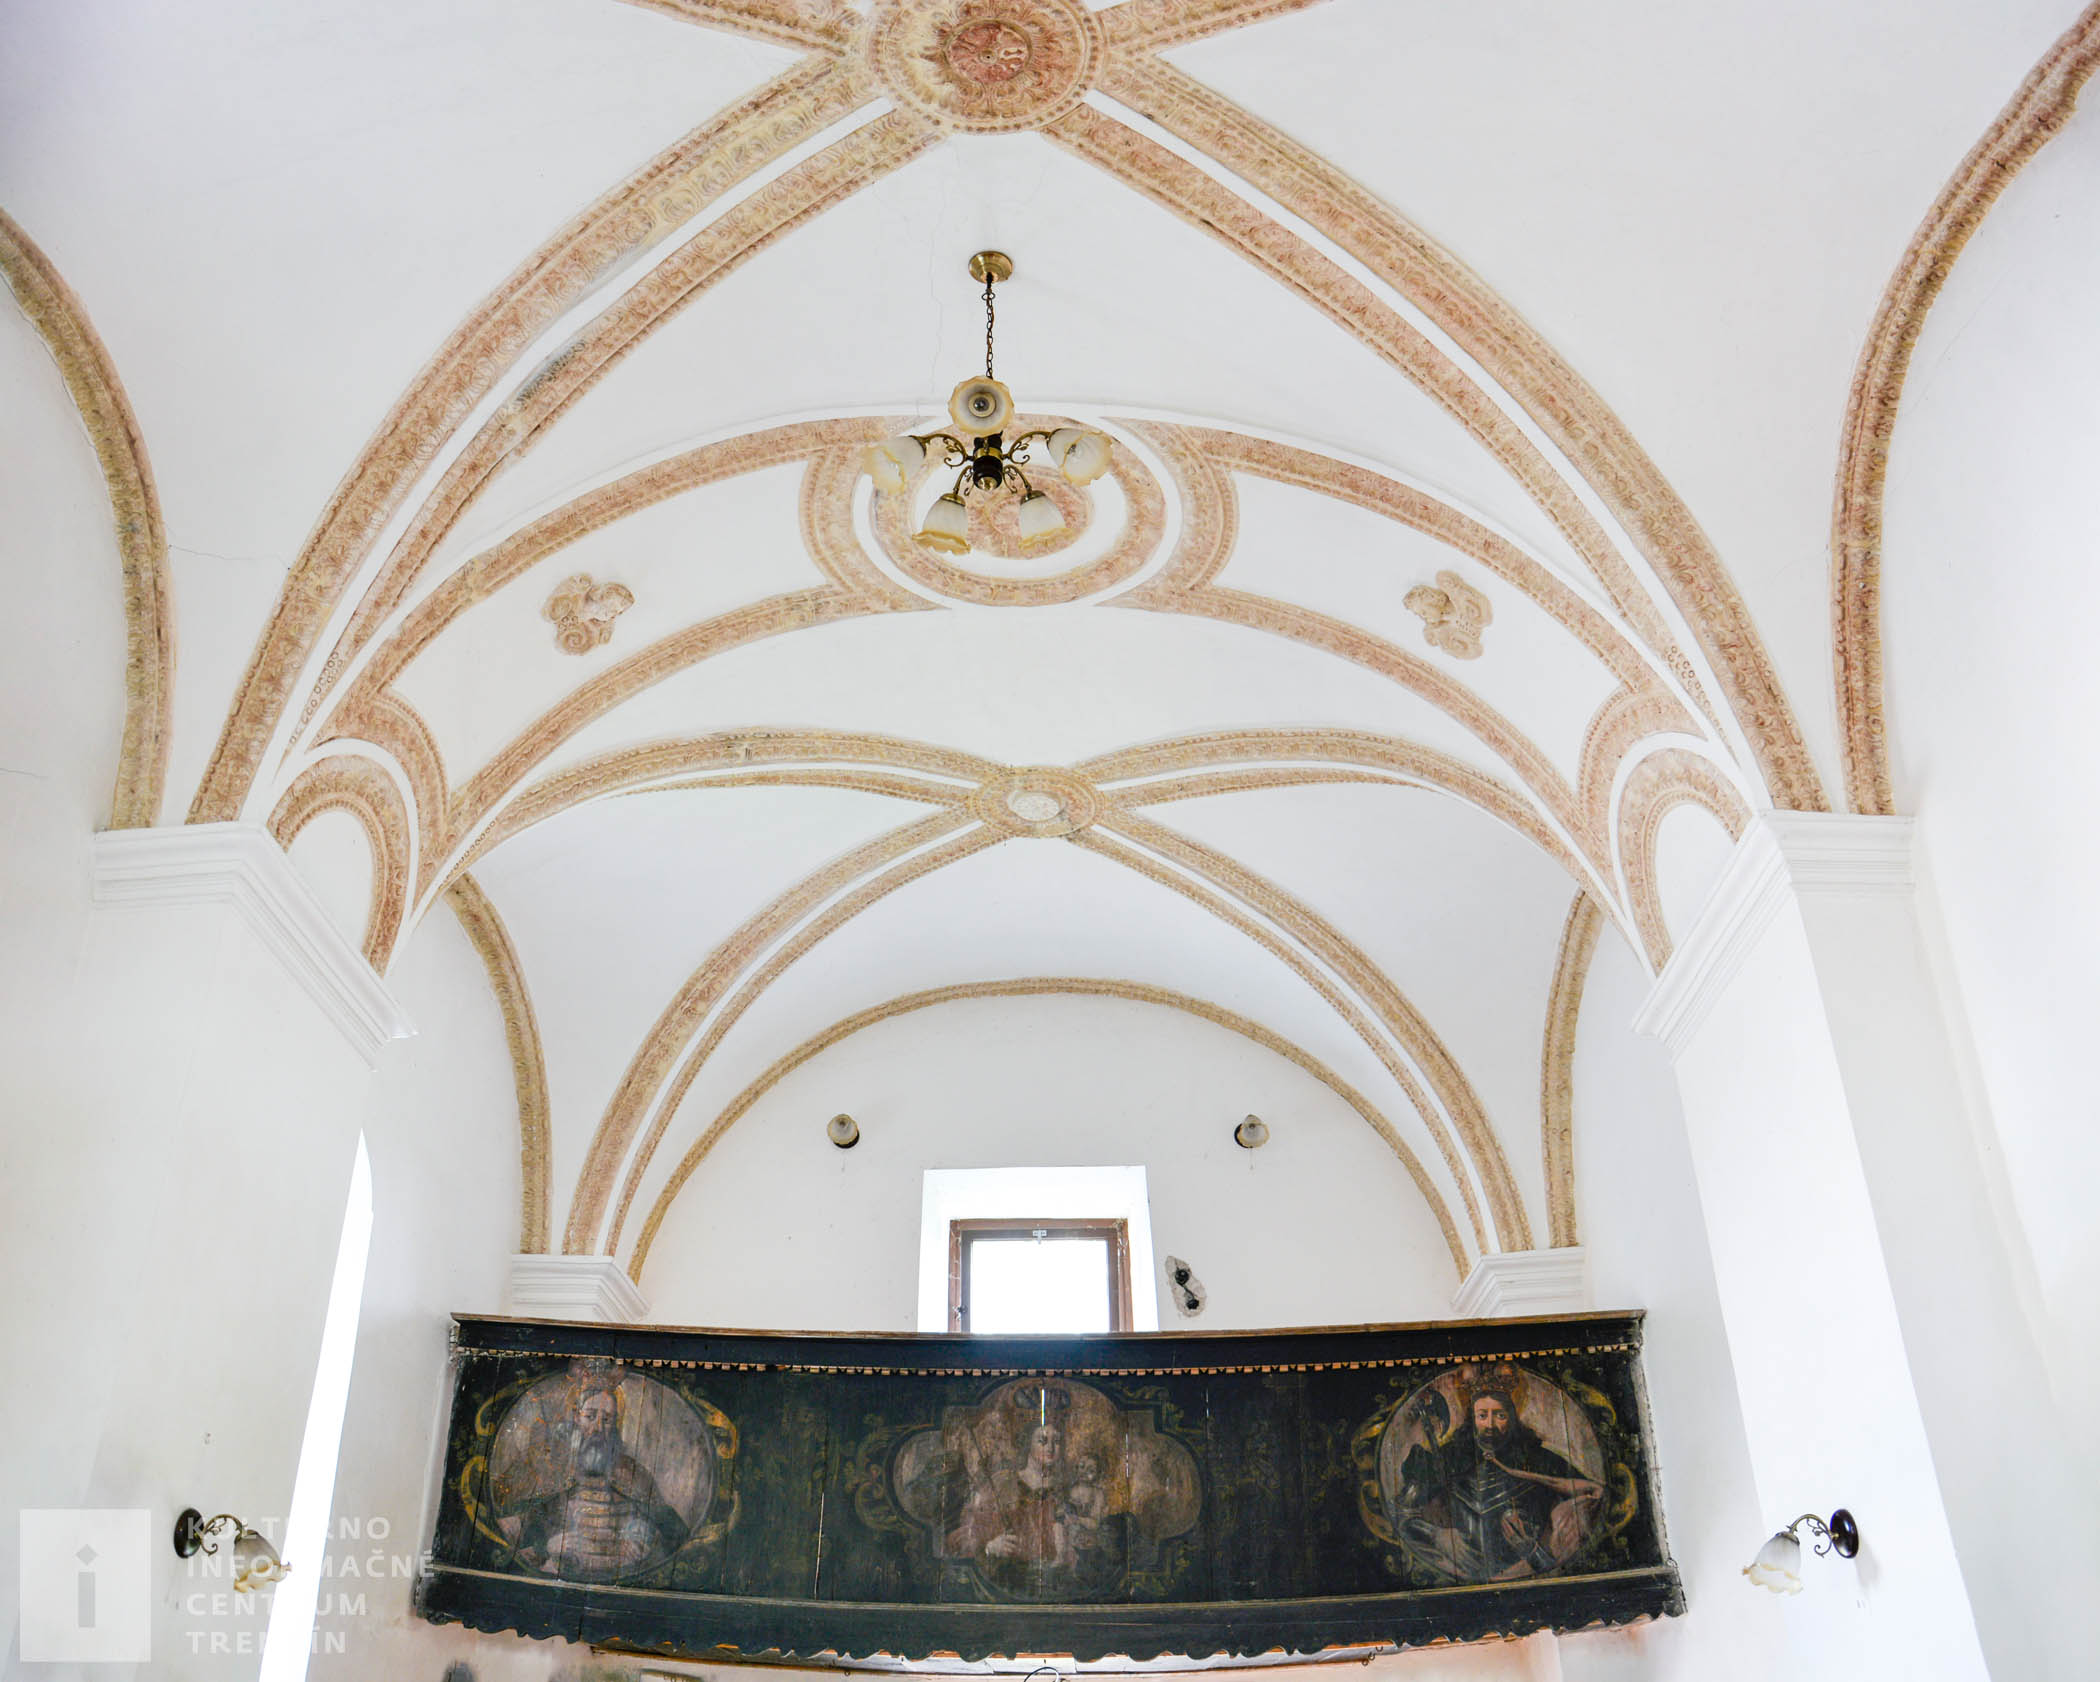 Nad vchodom kaplnky je drevený chór s maľovanými obrazmi svätcov, bol sem prevezený z hradnej kaplnky